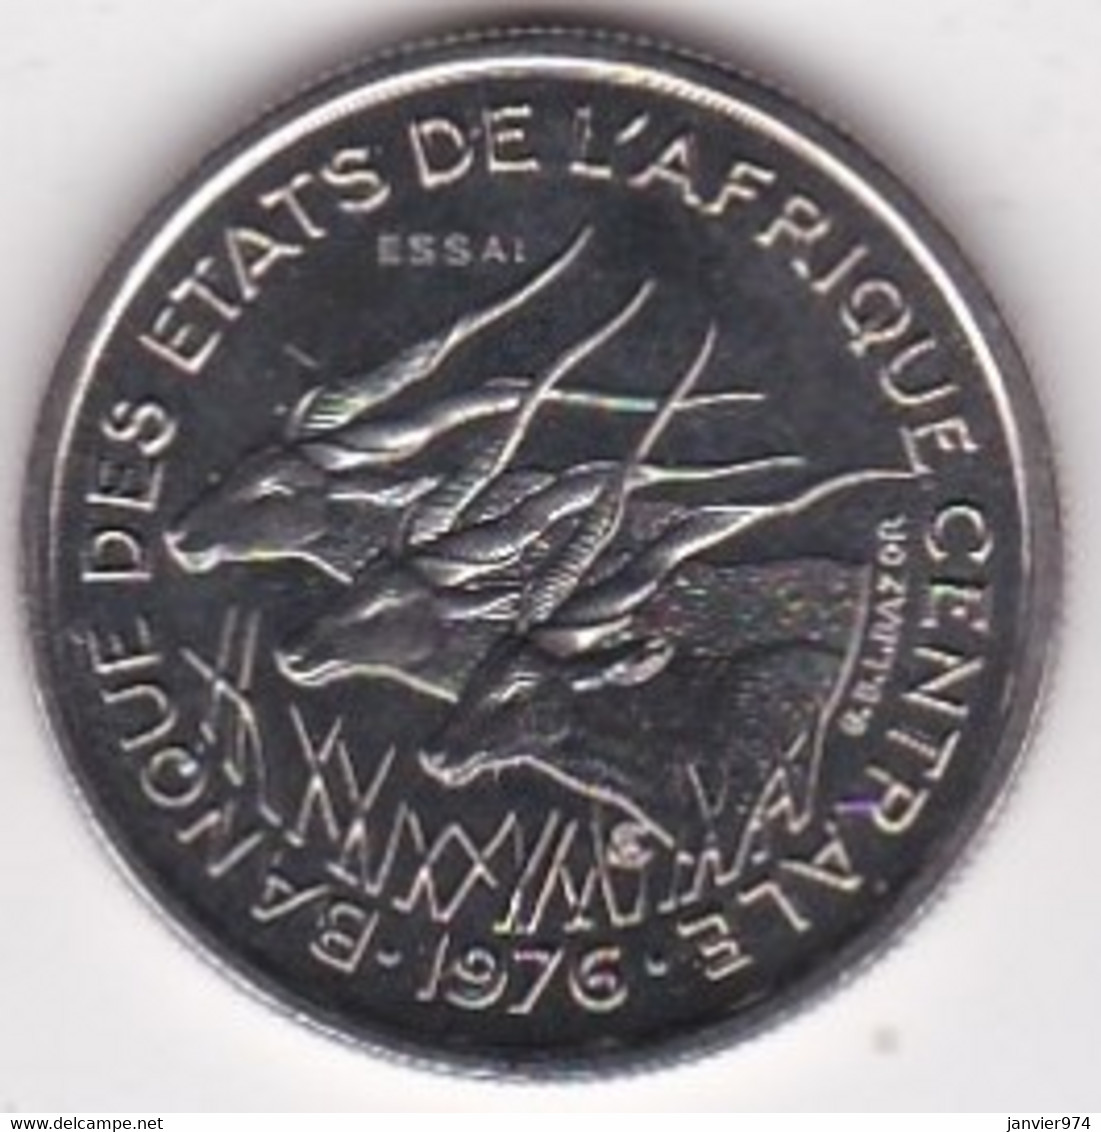 Republique Centrafricaine 50 Francs ESSAI 1976 B. Bronze Aluminium. KM# E 8 - Repubblica Centroafricana